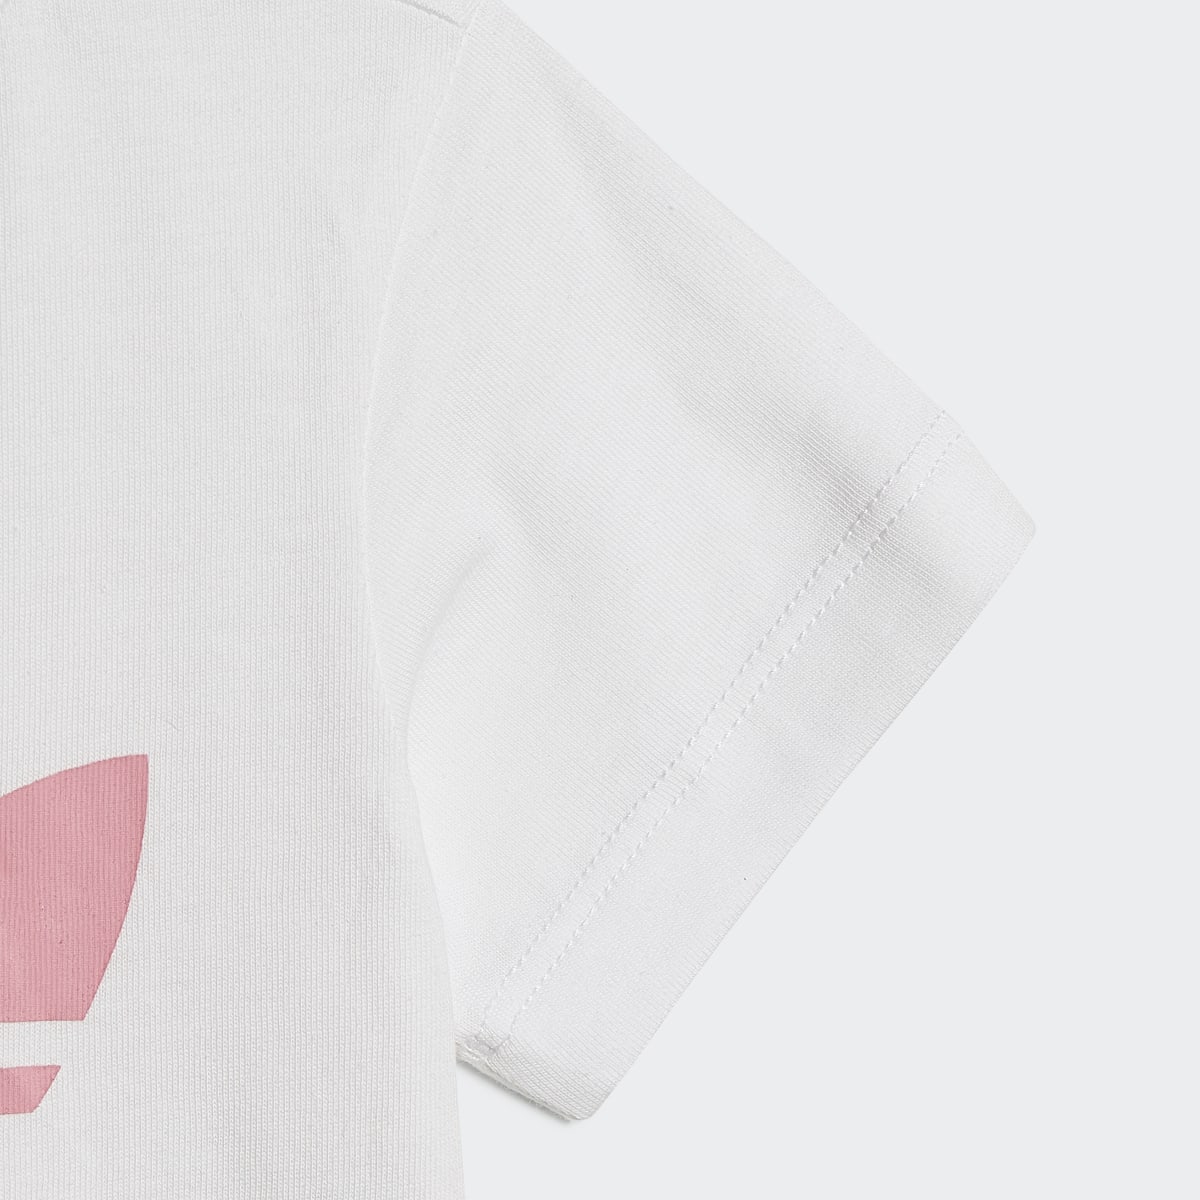 Adidas Ensemble t-shirt et short Trefoil. 8